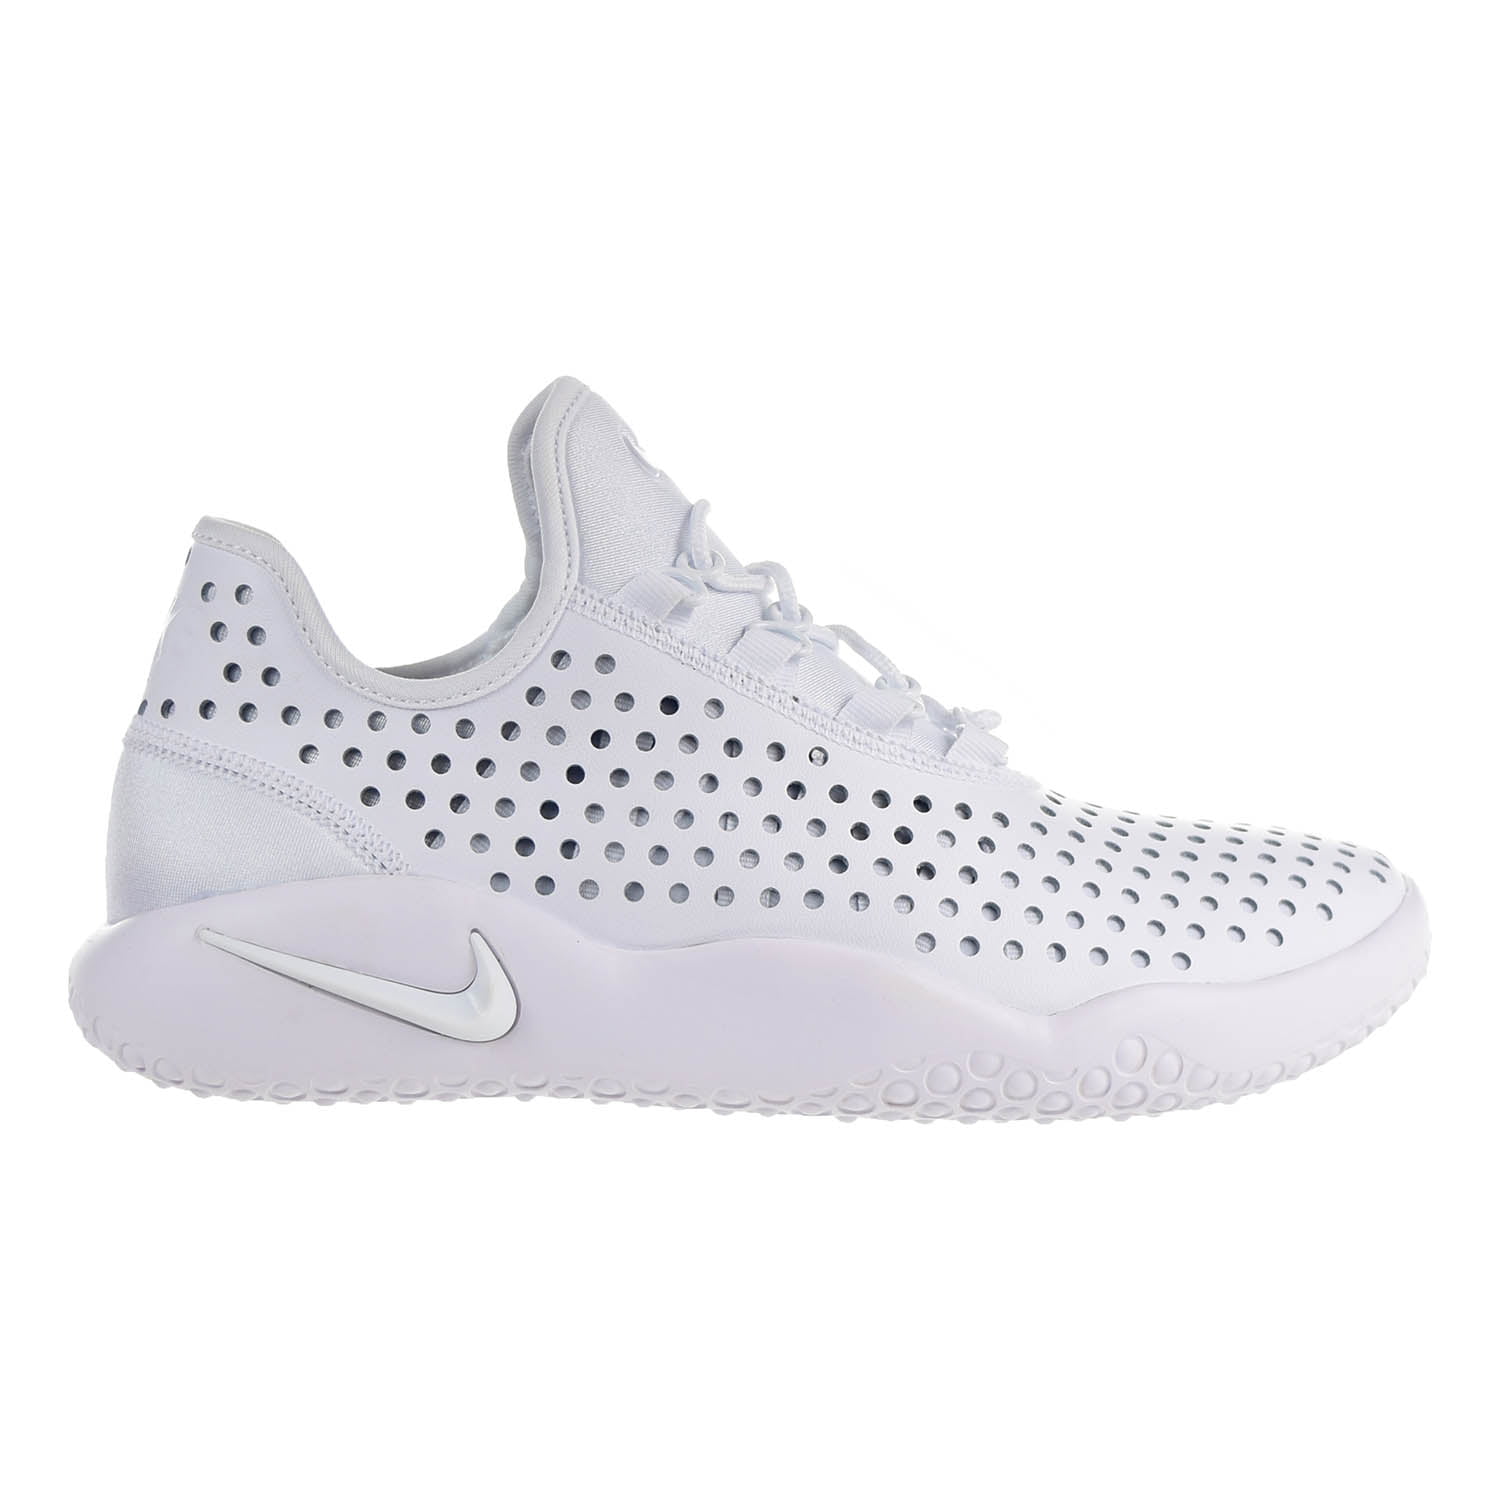 Nike FL-RUE Men's Shoes White/White/White 880994-100 (9.5 D(M) - Walmart.com